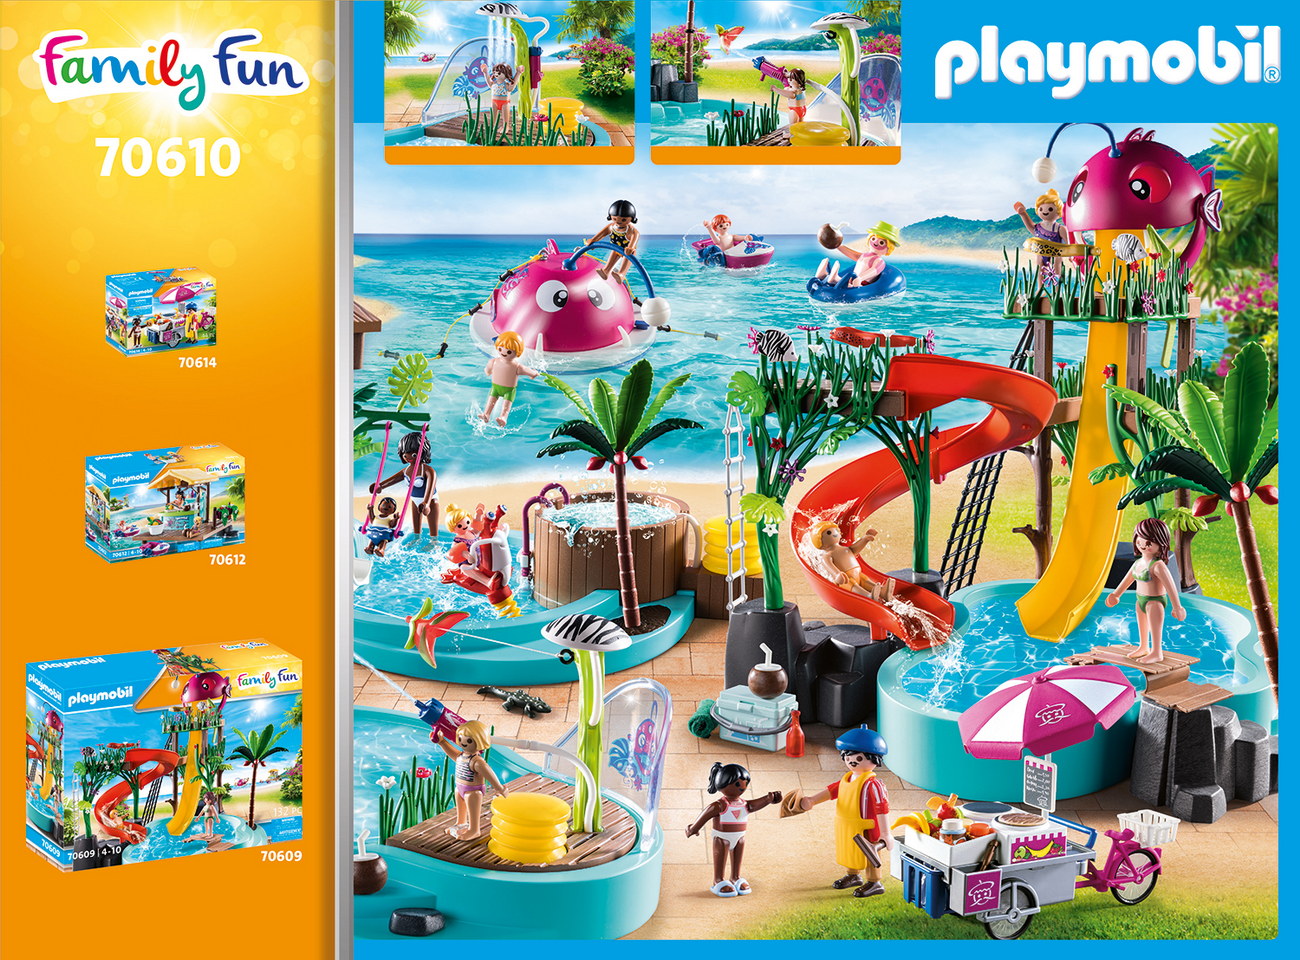 Playmobil 70610 - Spaßbecken mit Wasserspritze - Family Fun